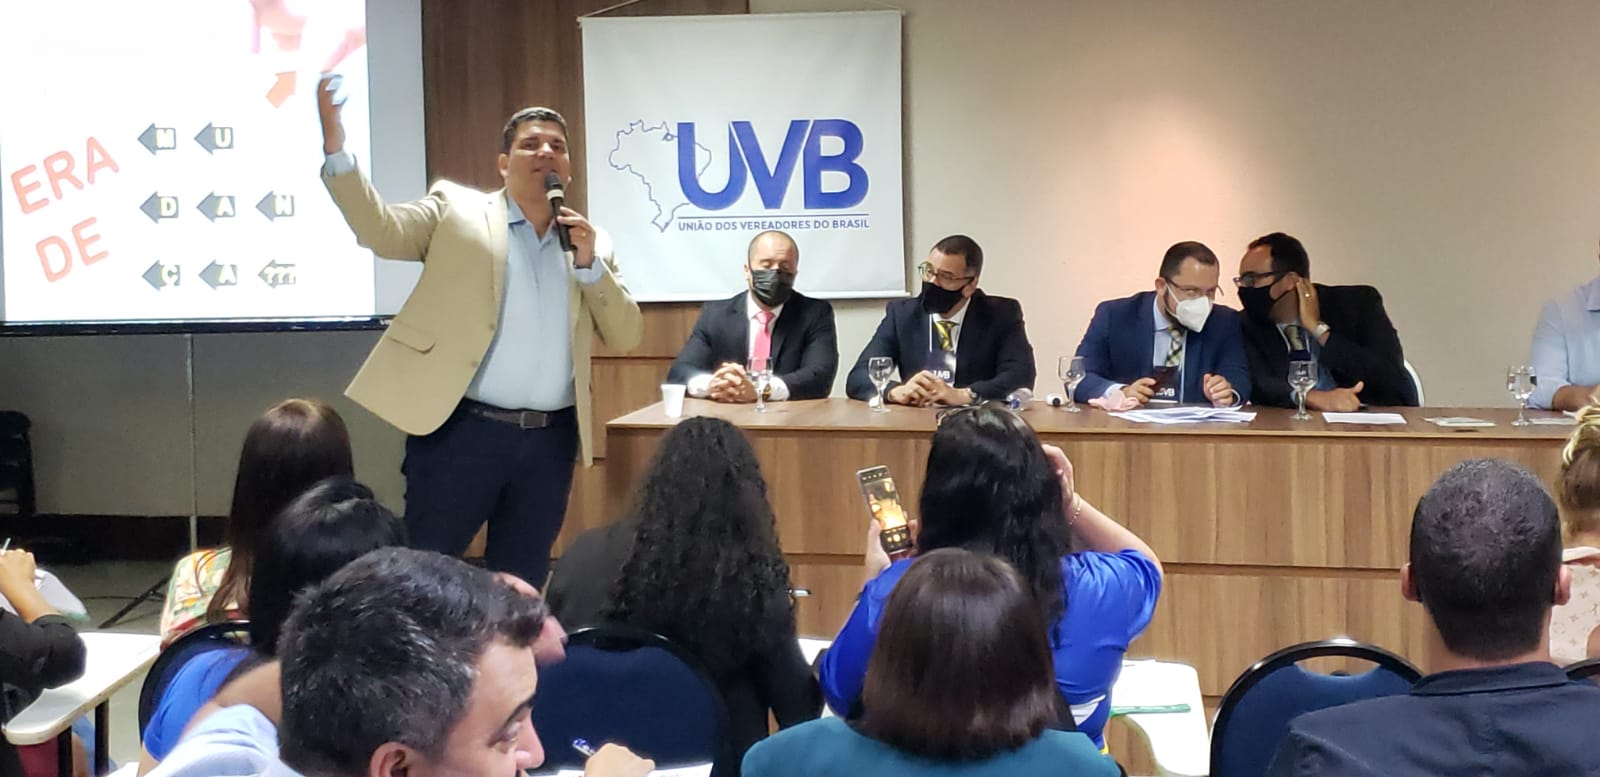 Evento em Salvador reúne vereadores de todo Brasil